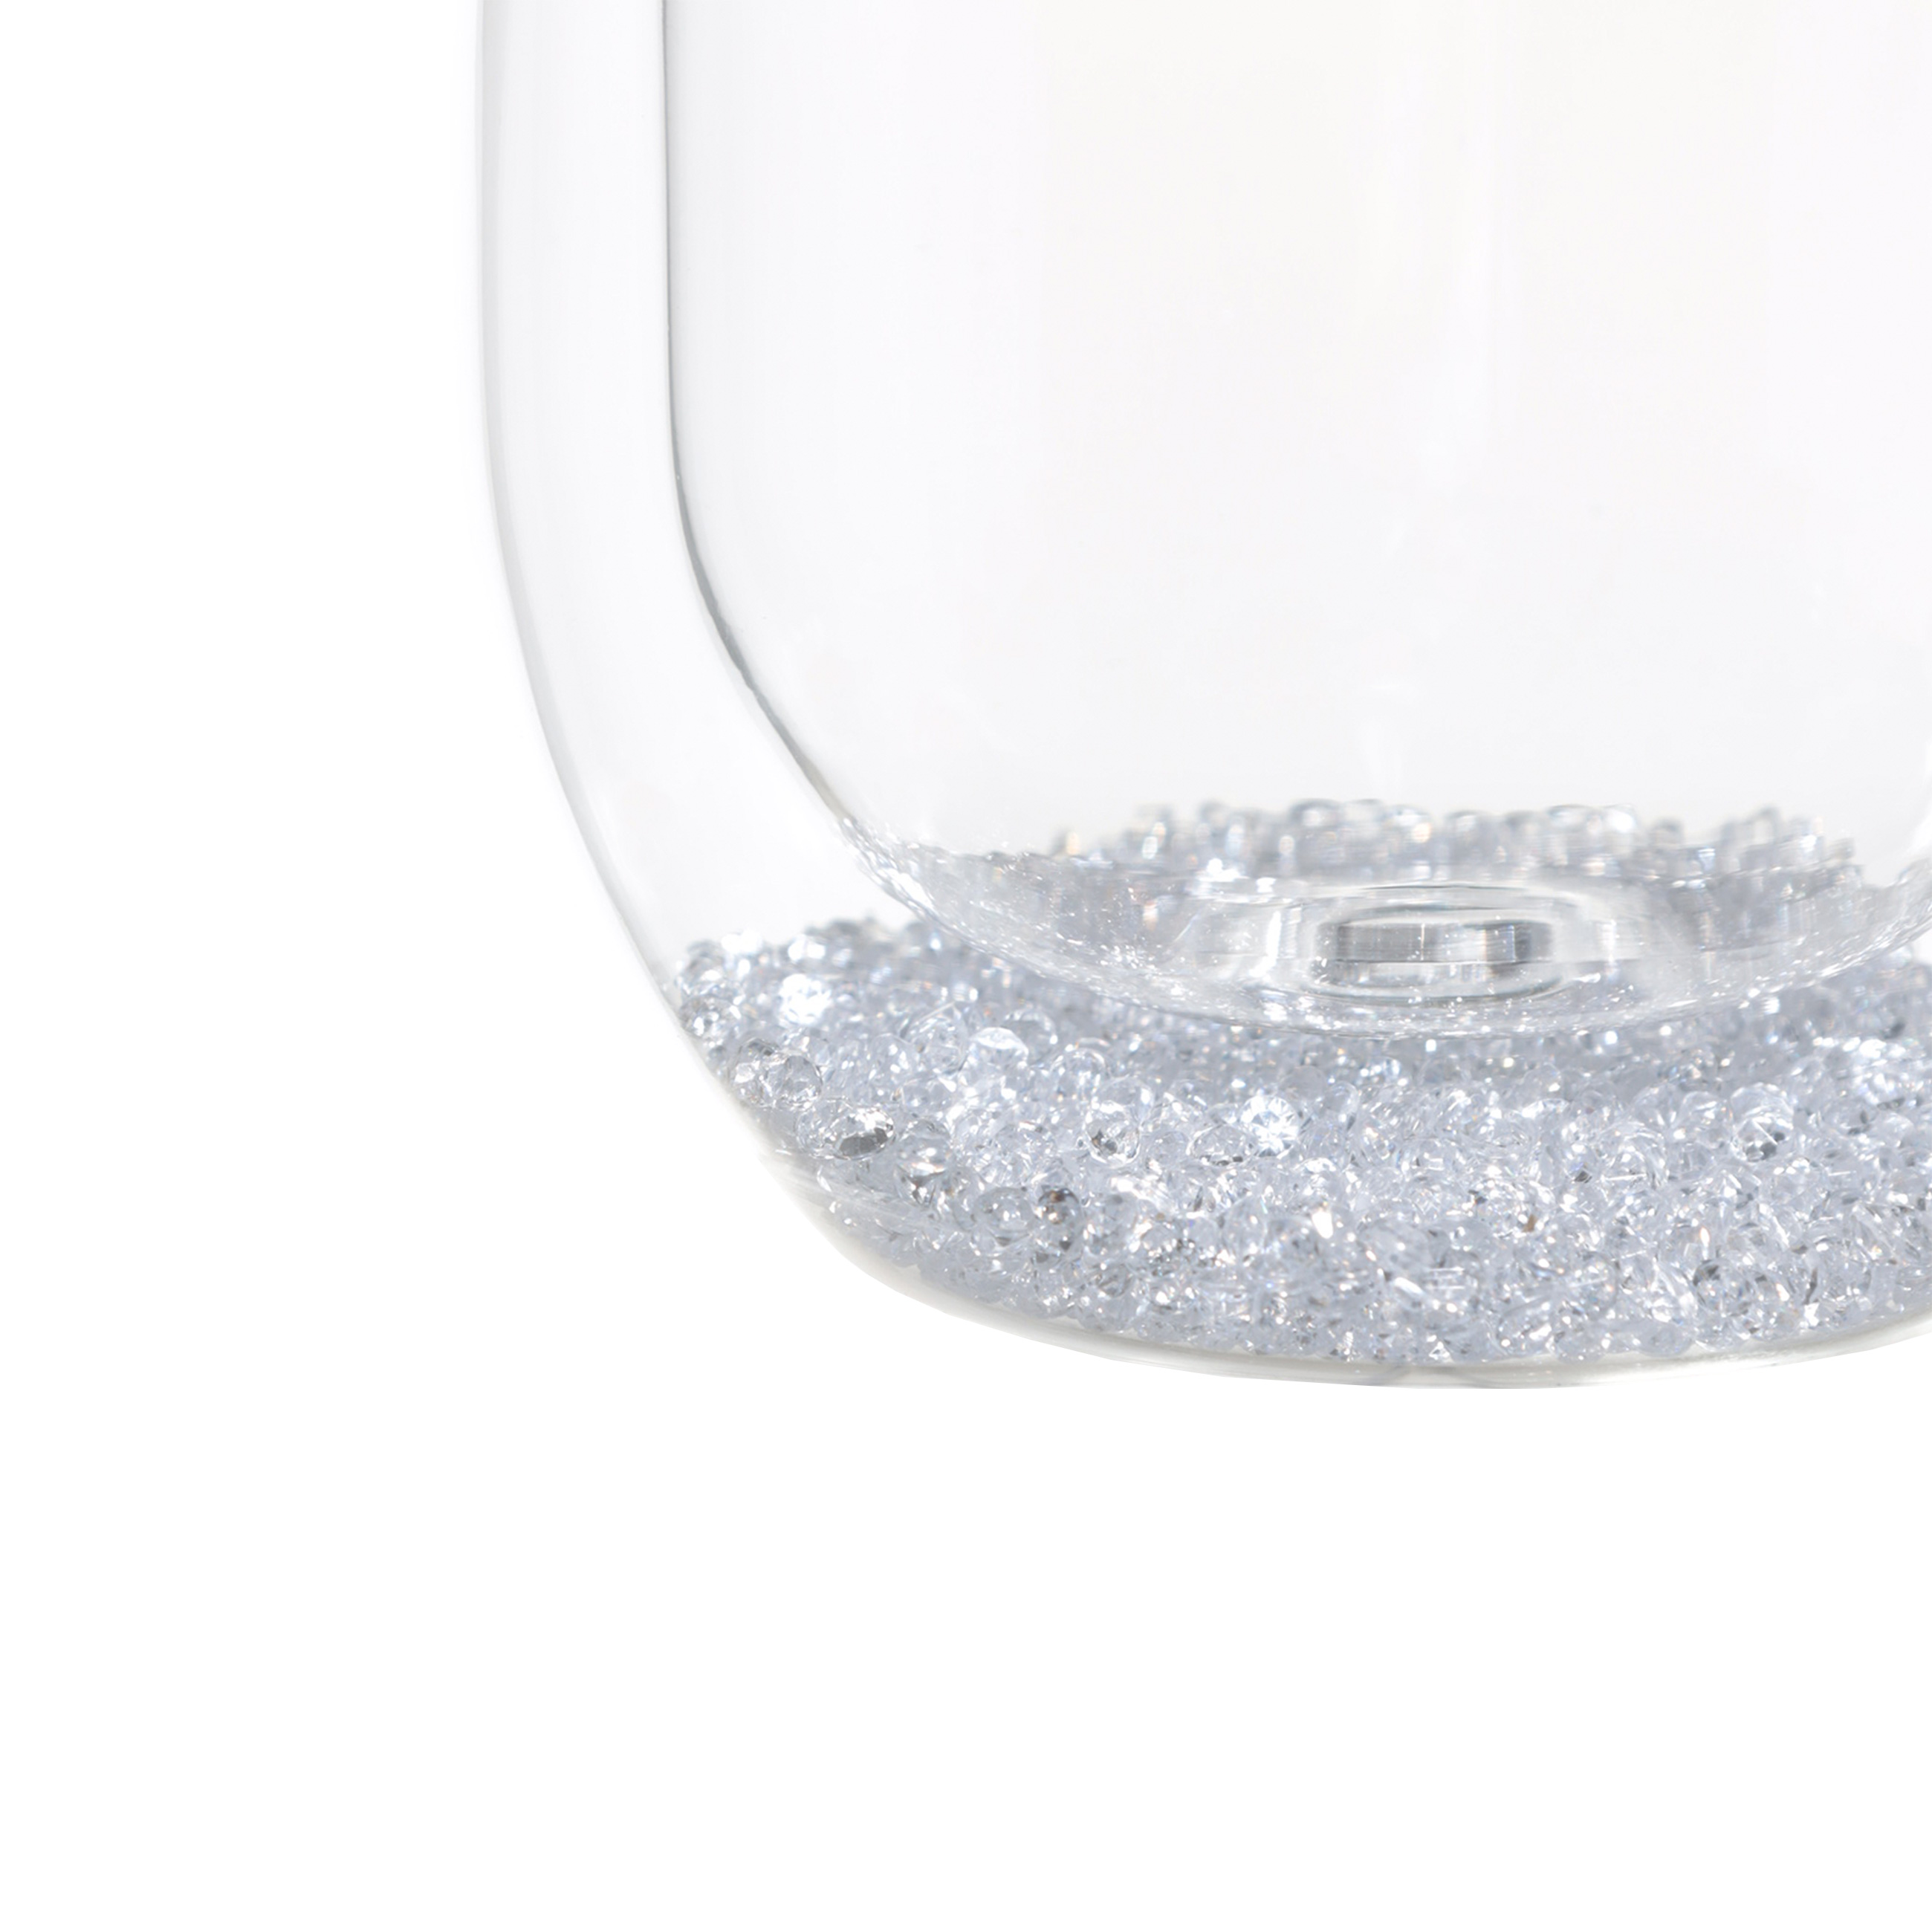 Стакан, 11 см, 300 мл, 2 шт, стекло Б, с кристаллами внутри, Air decor изображение № 3